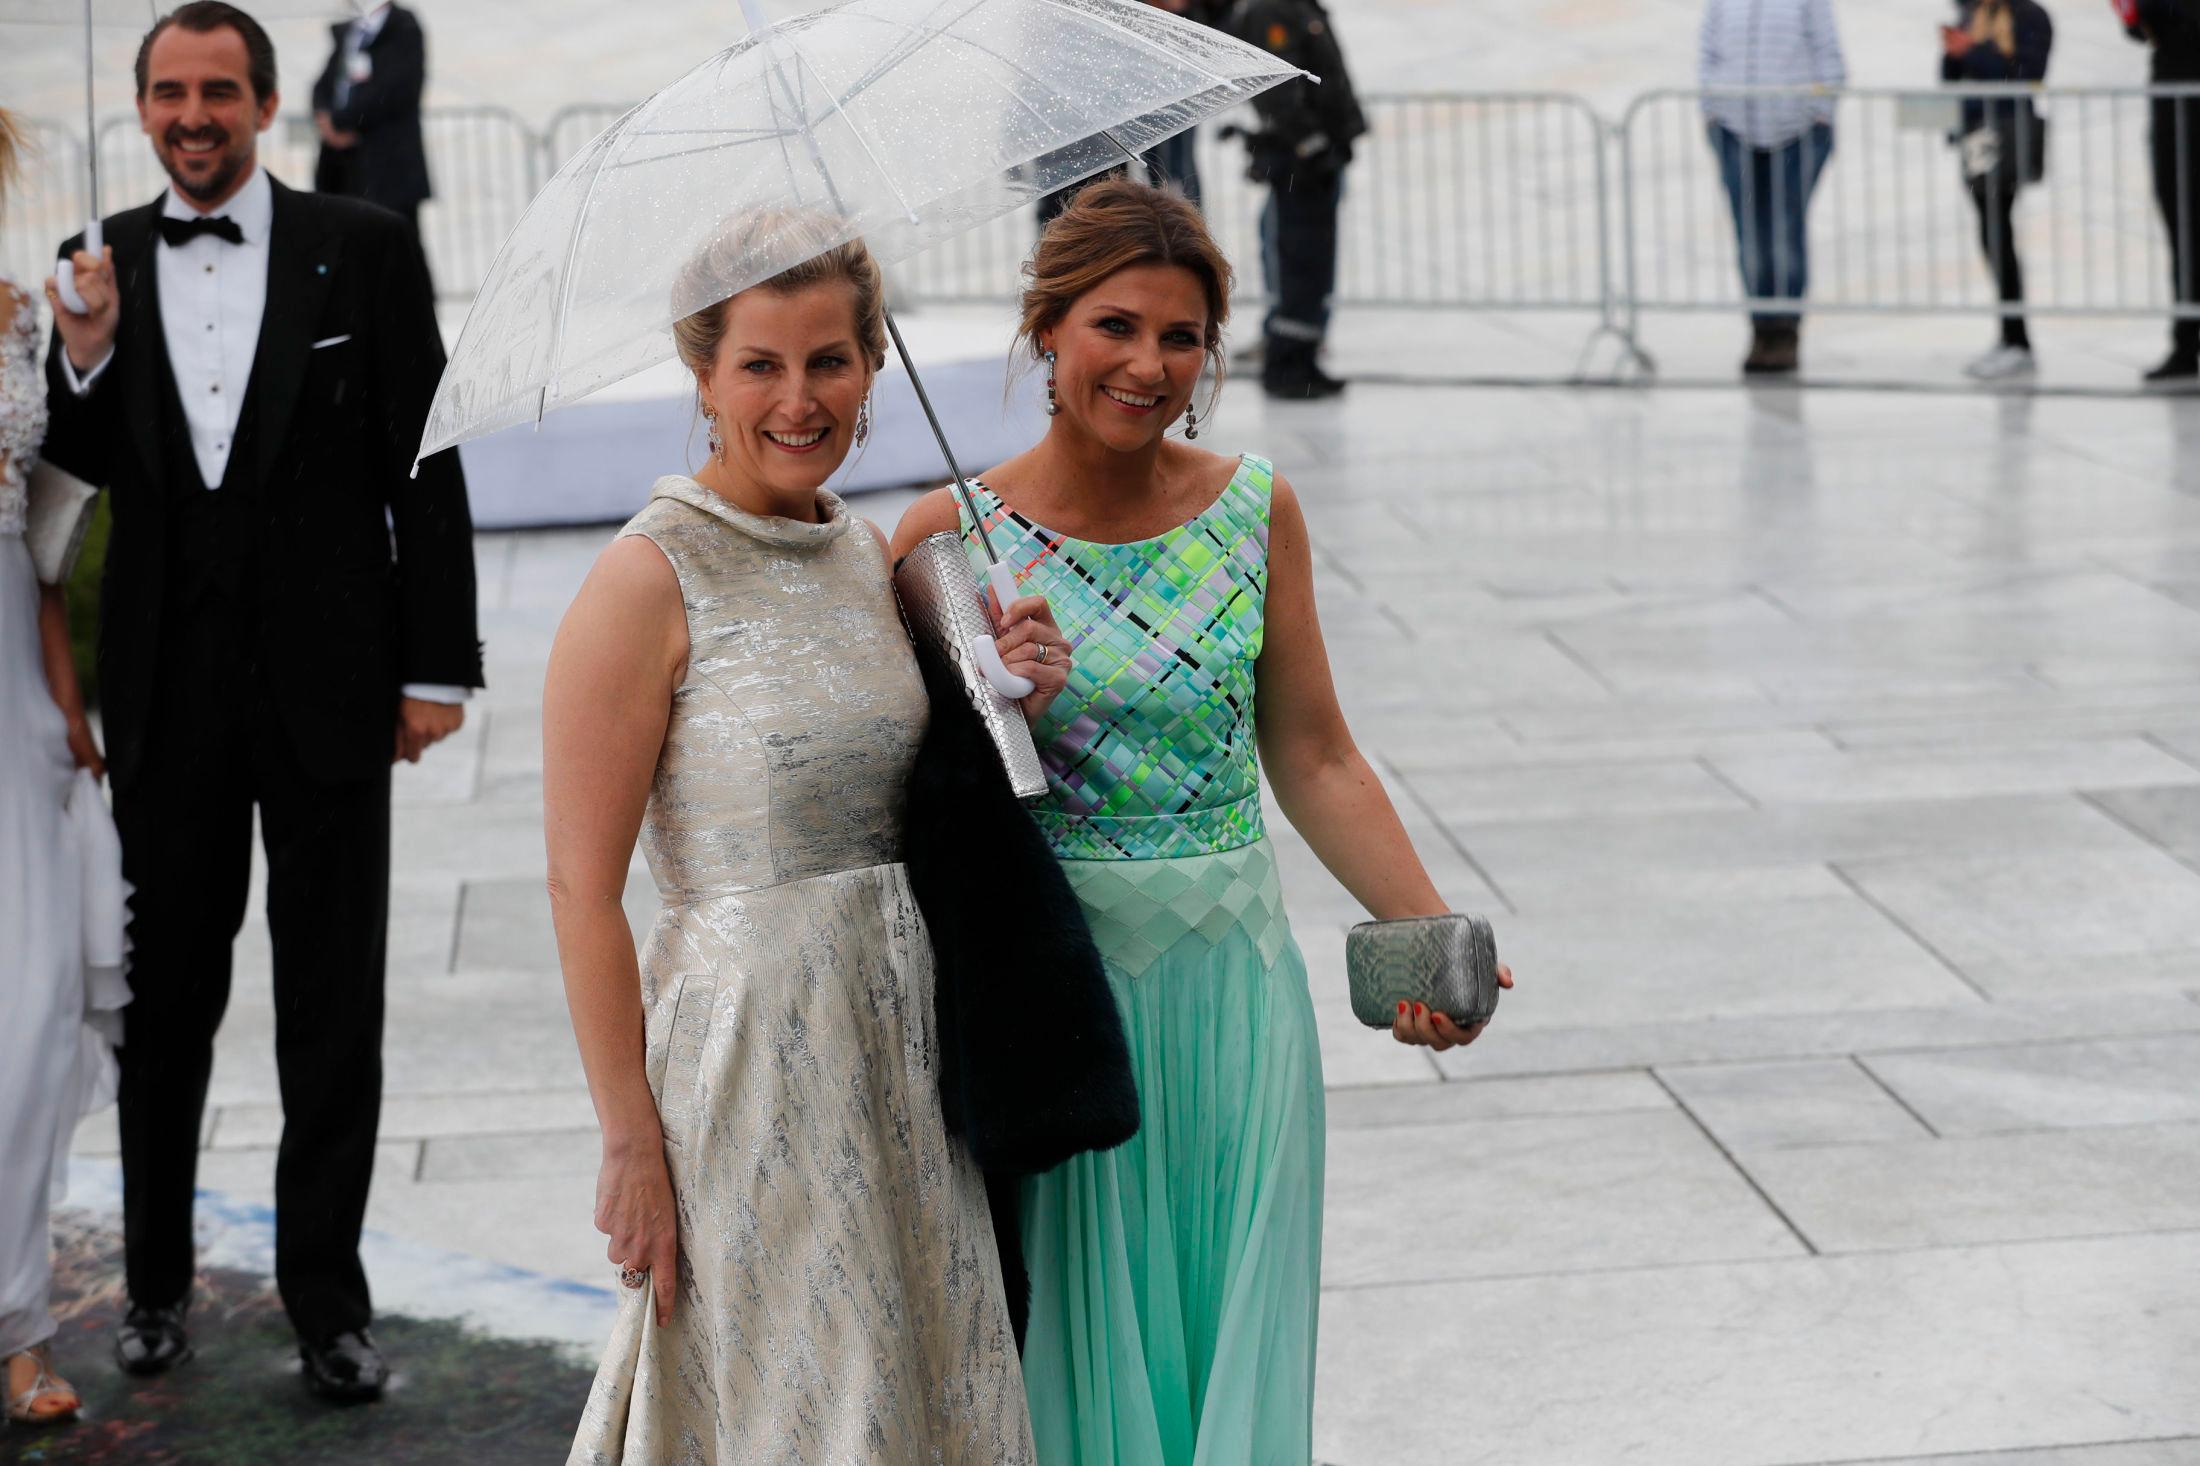 GRØNT ER SKJØNT: Prinsesse Märtha Louise stilte i lysegrønn kjole designet av Ingunn Birkeland.